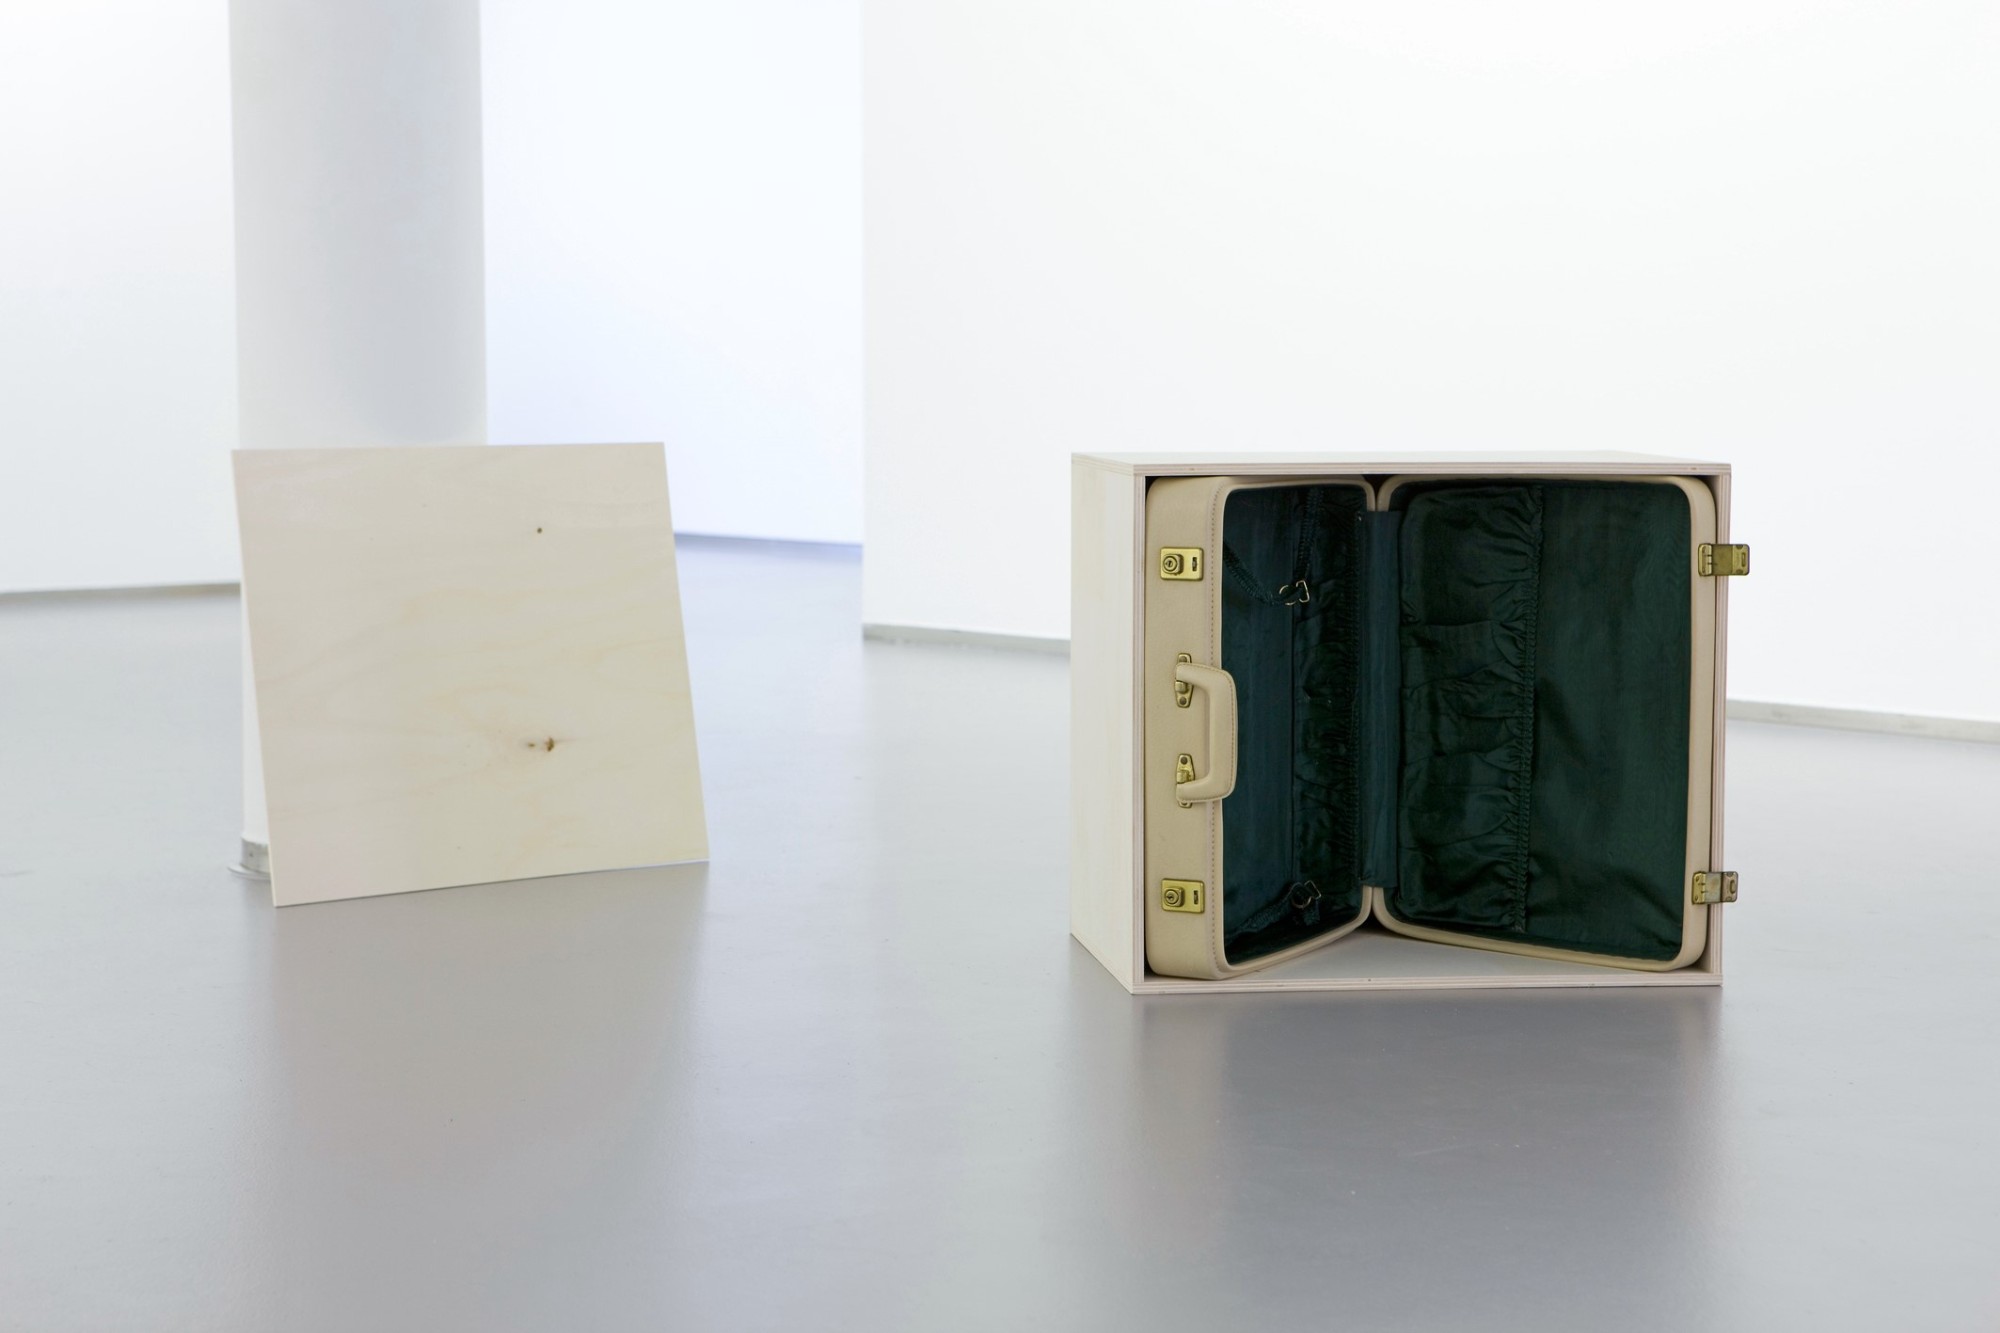 Anna Kolodziejska, untitled (TV), 2010, plywood, suitcase, 45 x 62 x 41 cm